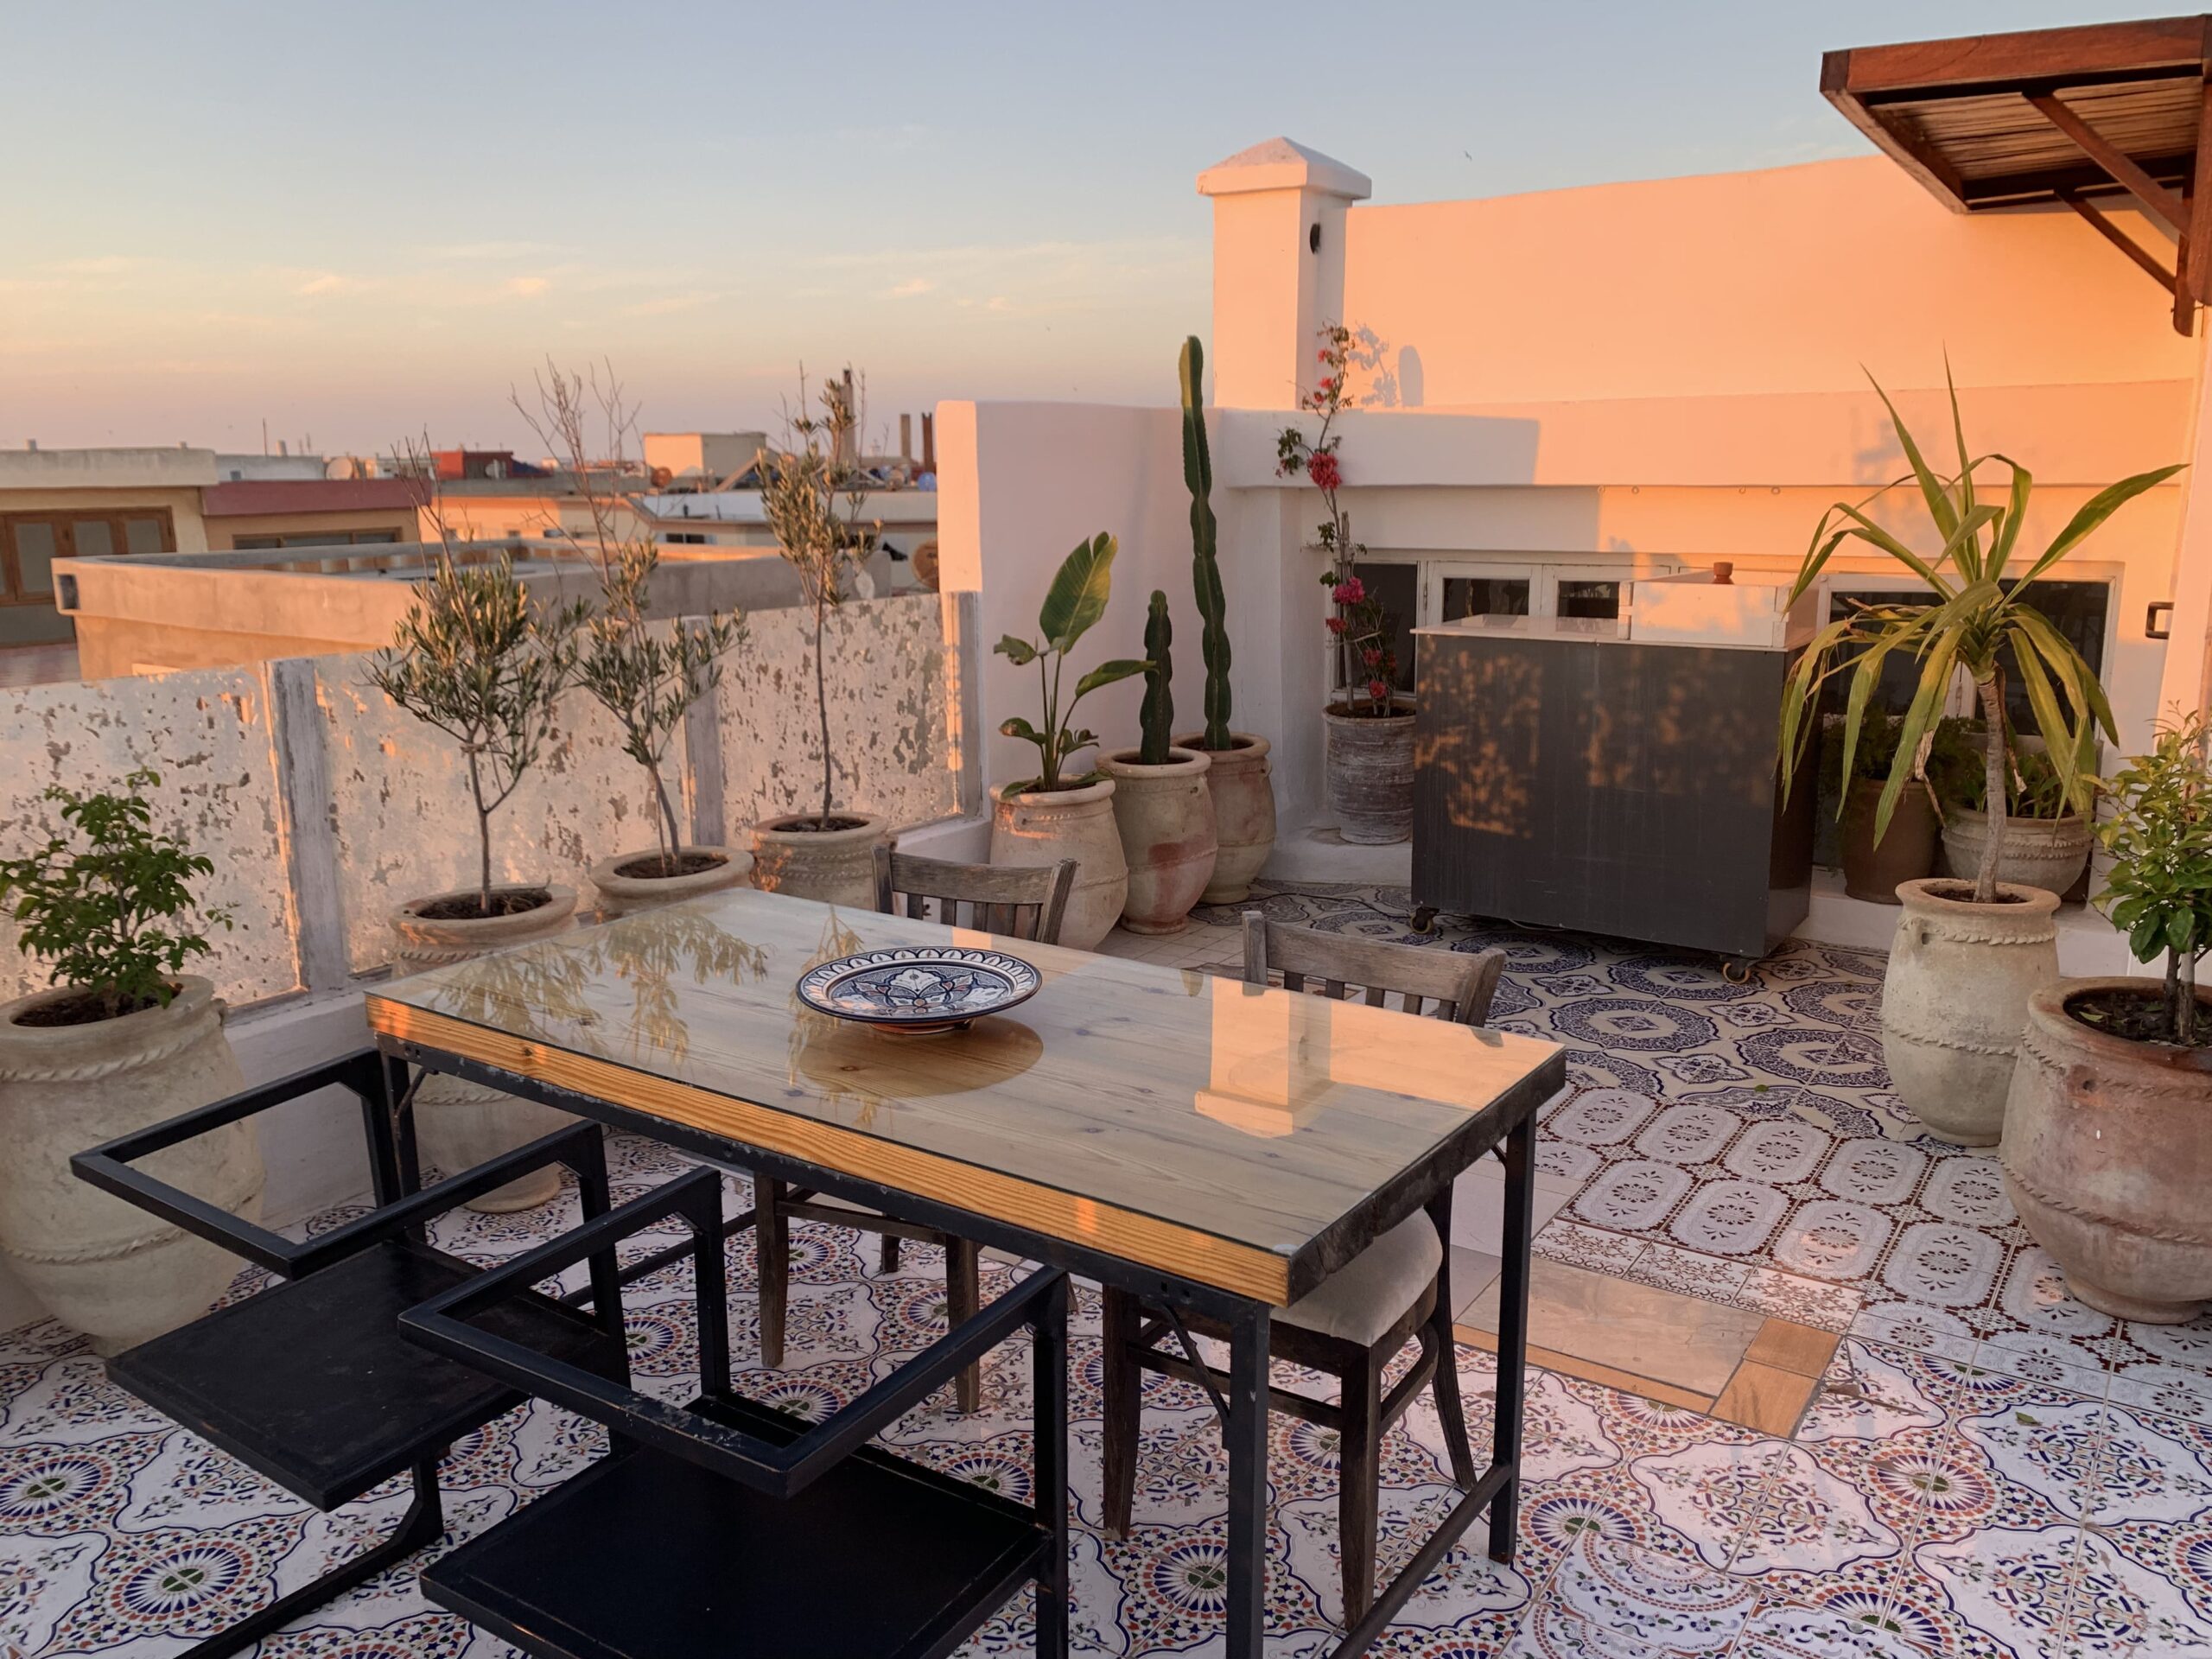 The rooftop Essaouira